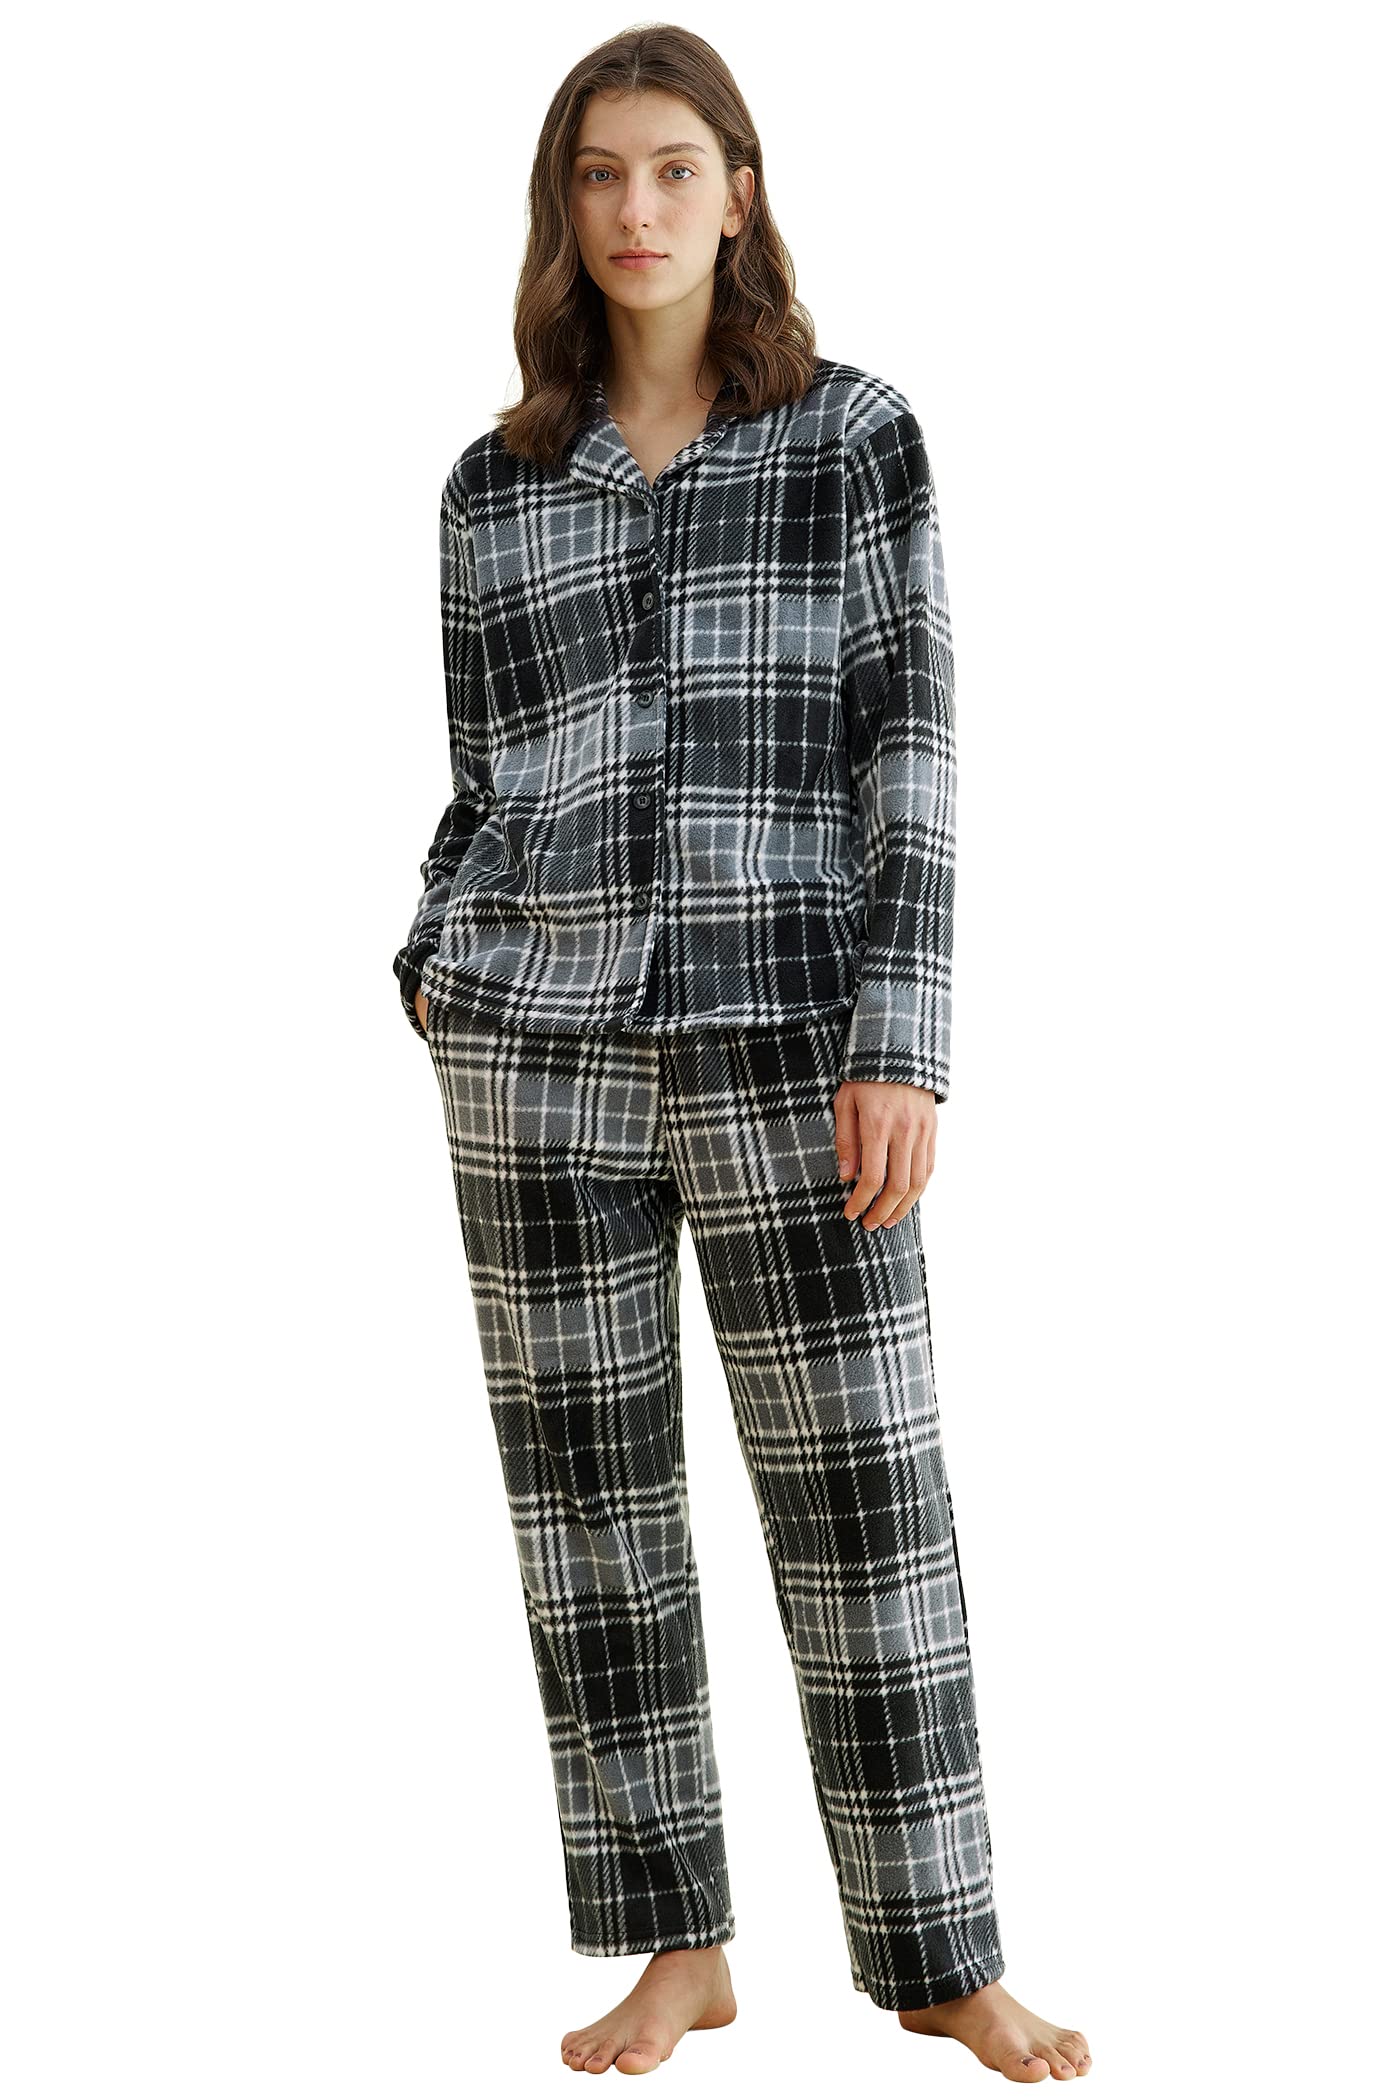 Women's Plaid Fleece Pajamas Set Notch Collar Shirt and Pants